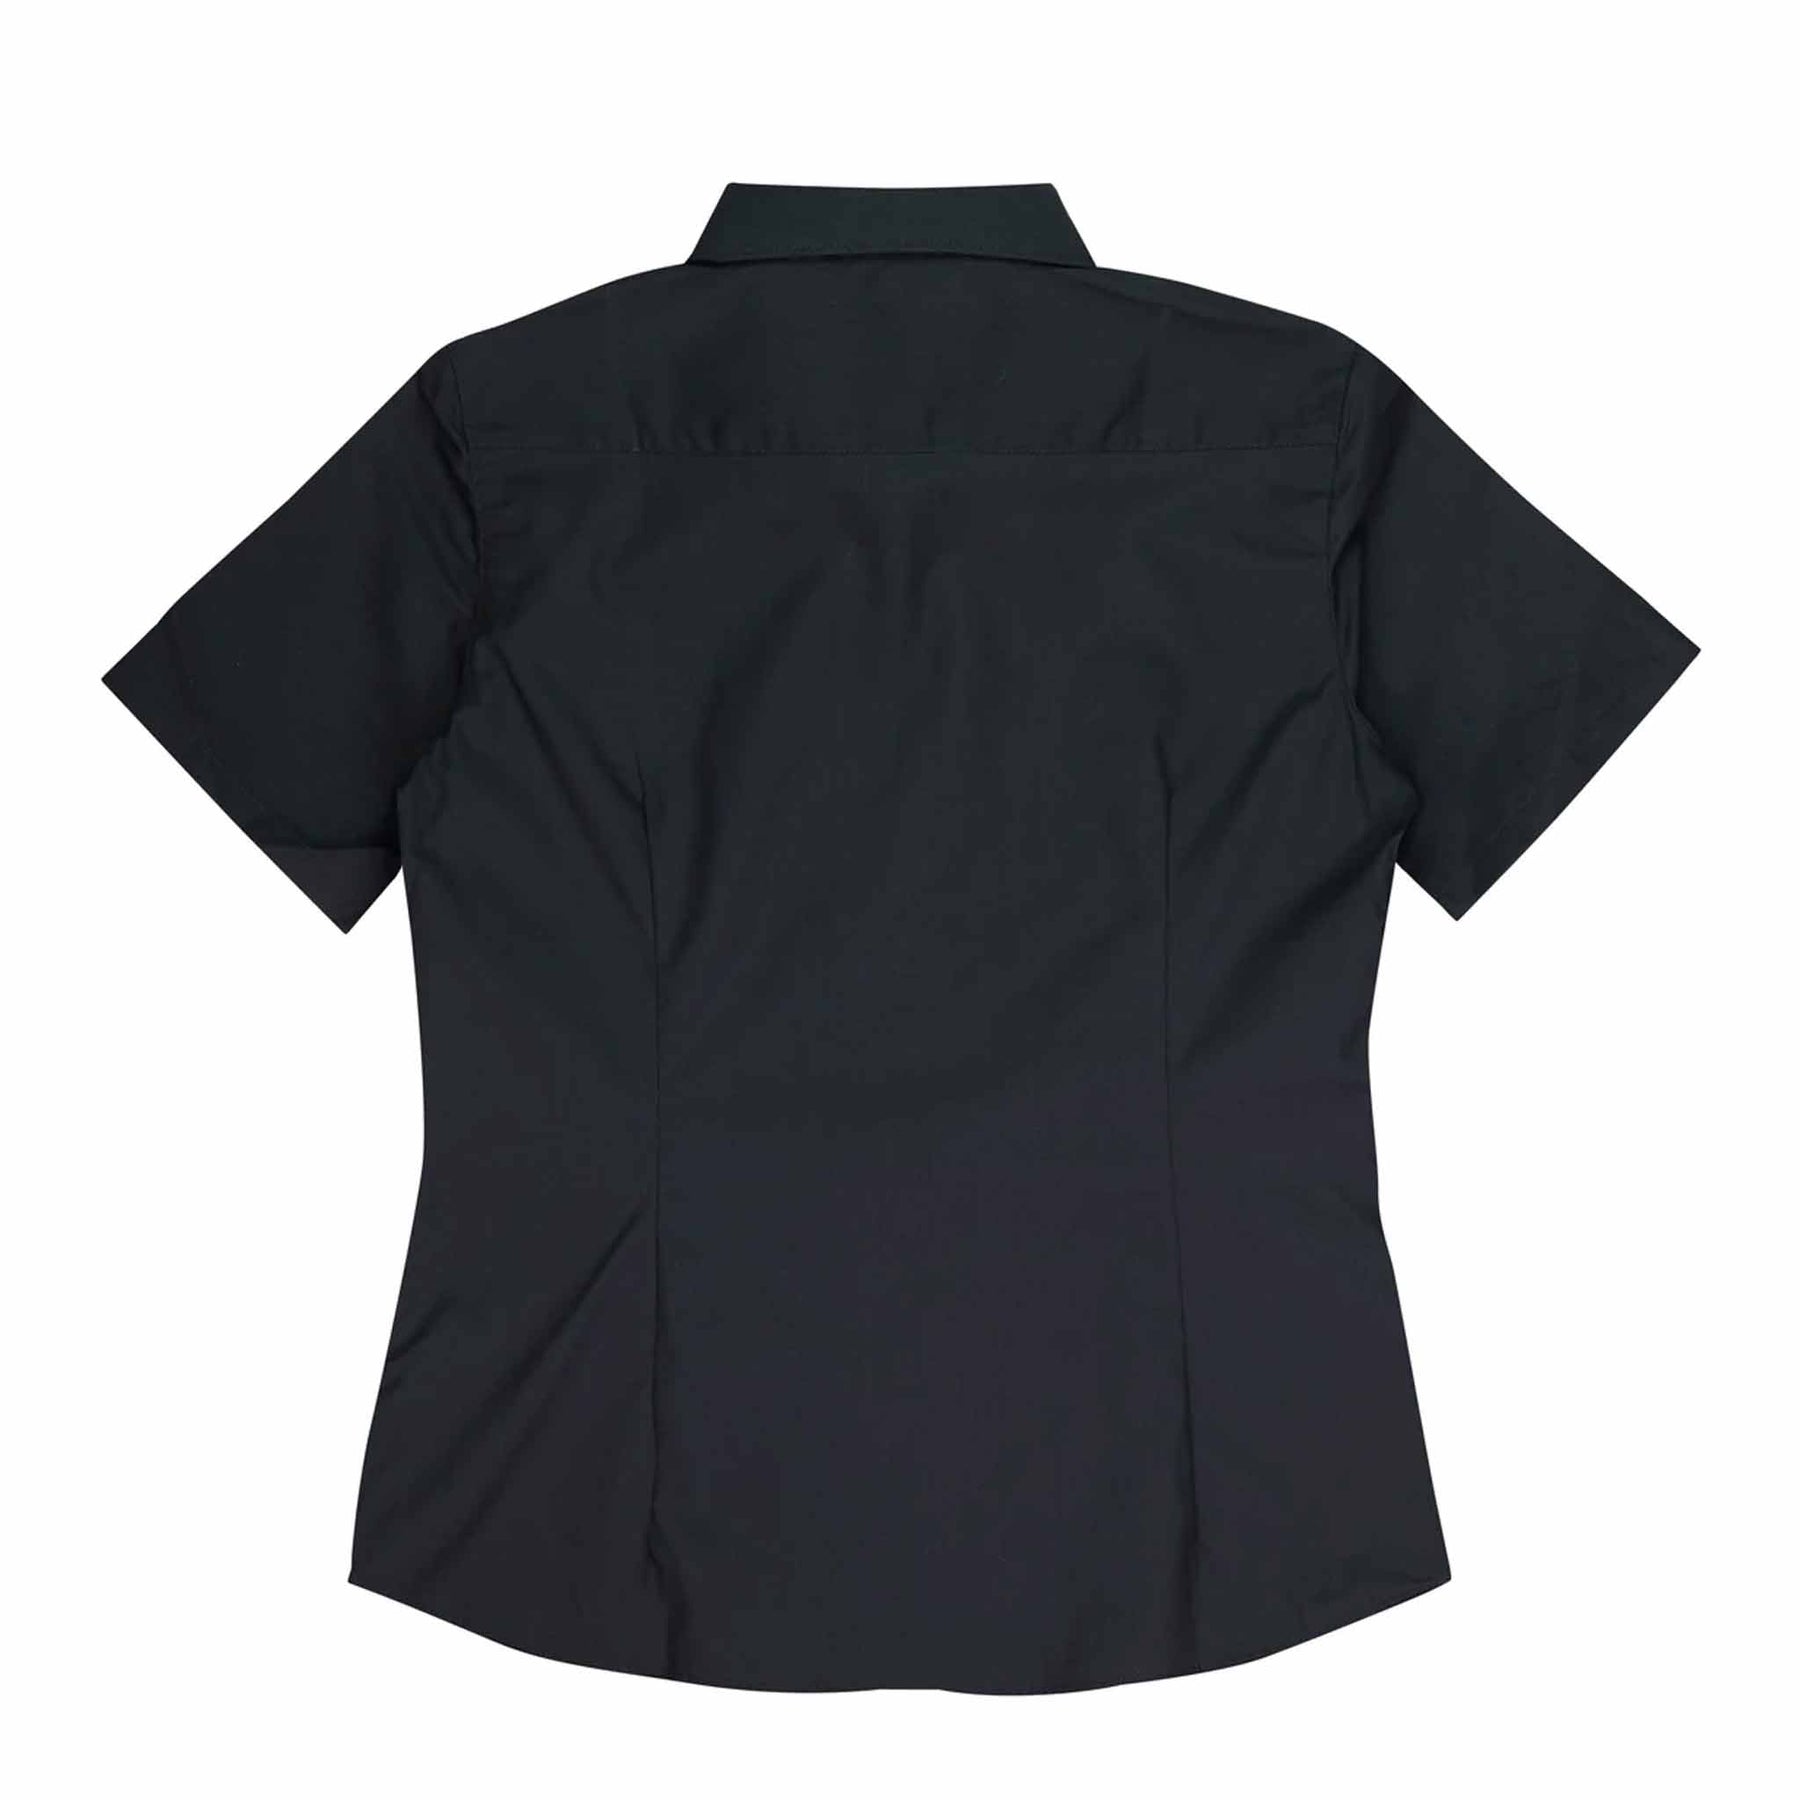 aussie pacific kingswood ladies short sleeve shirt in black